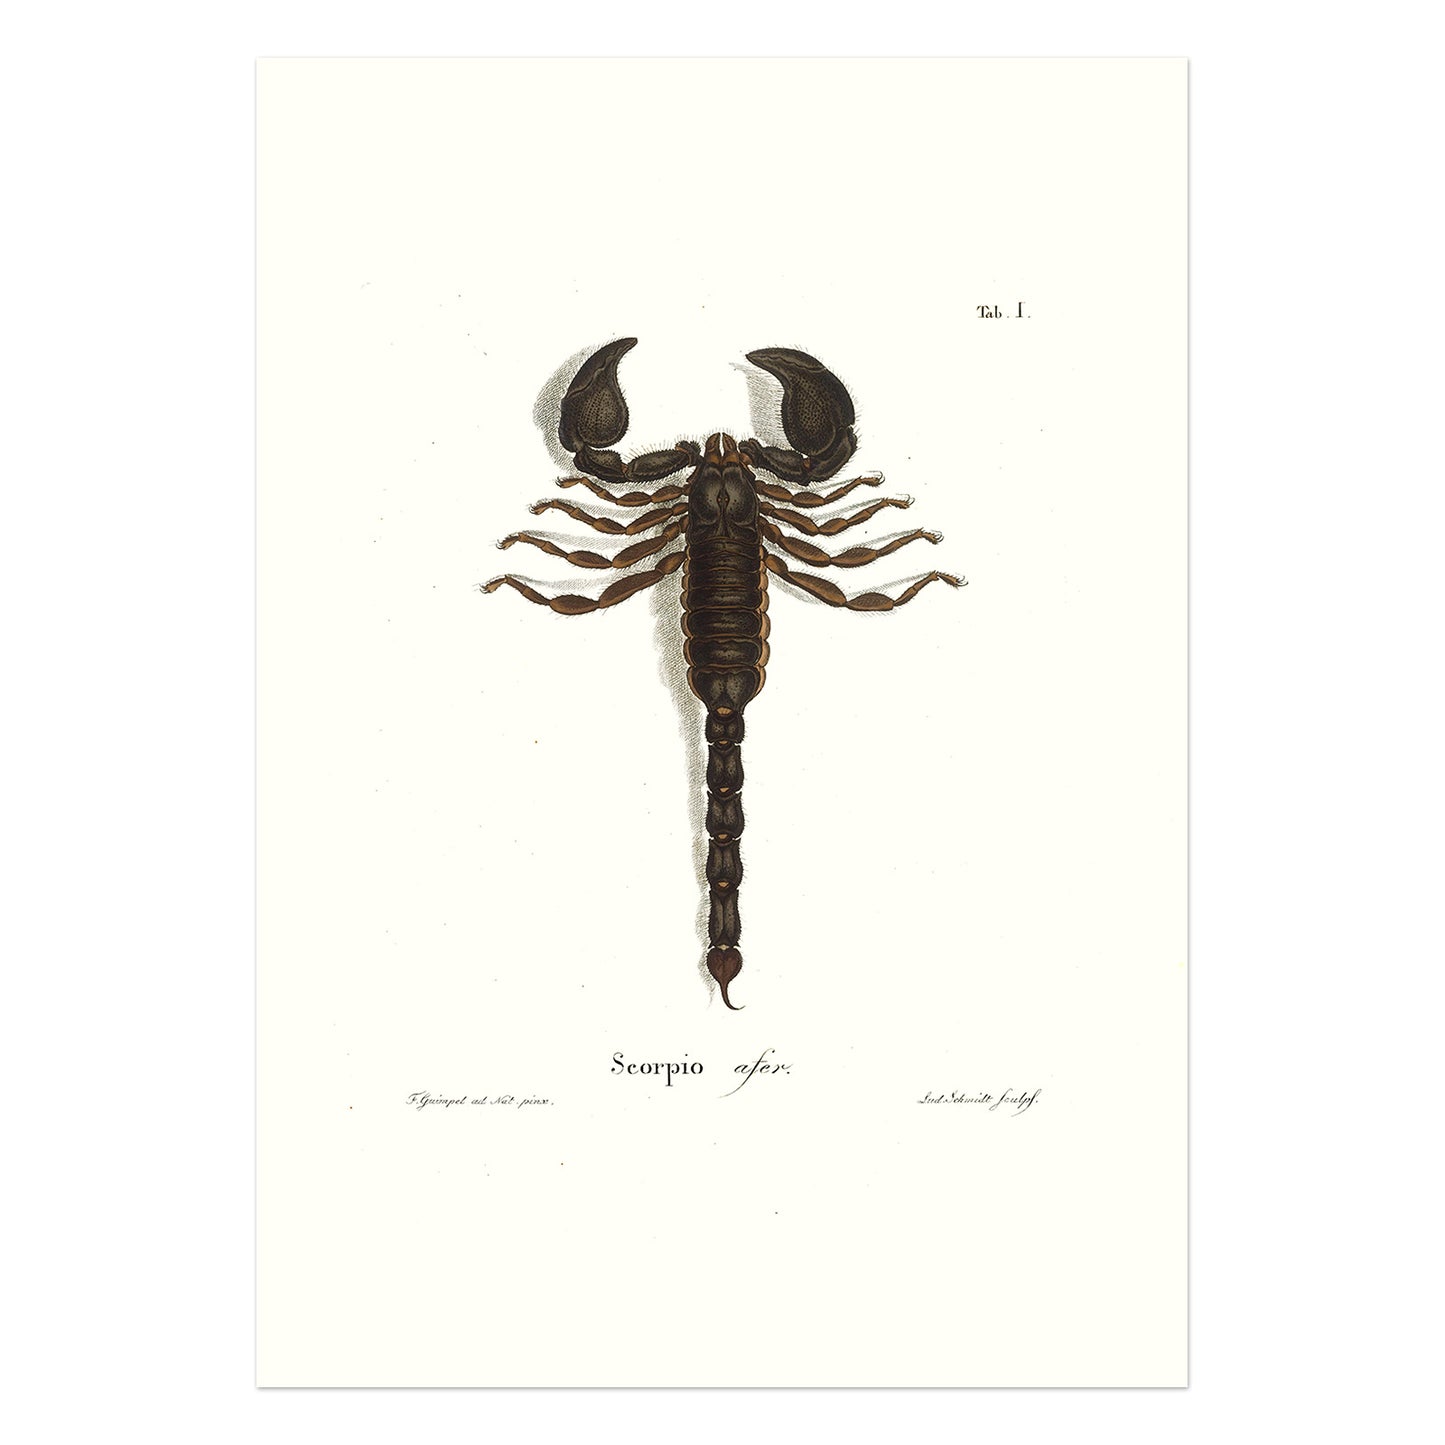 Skorpion - Scorpio afer